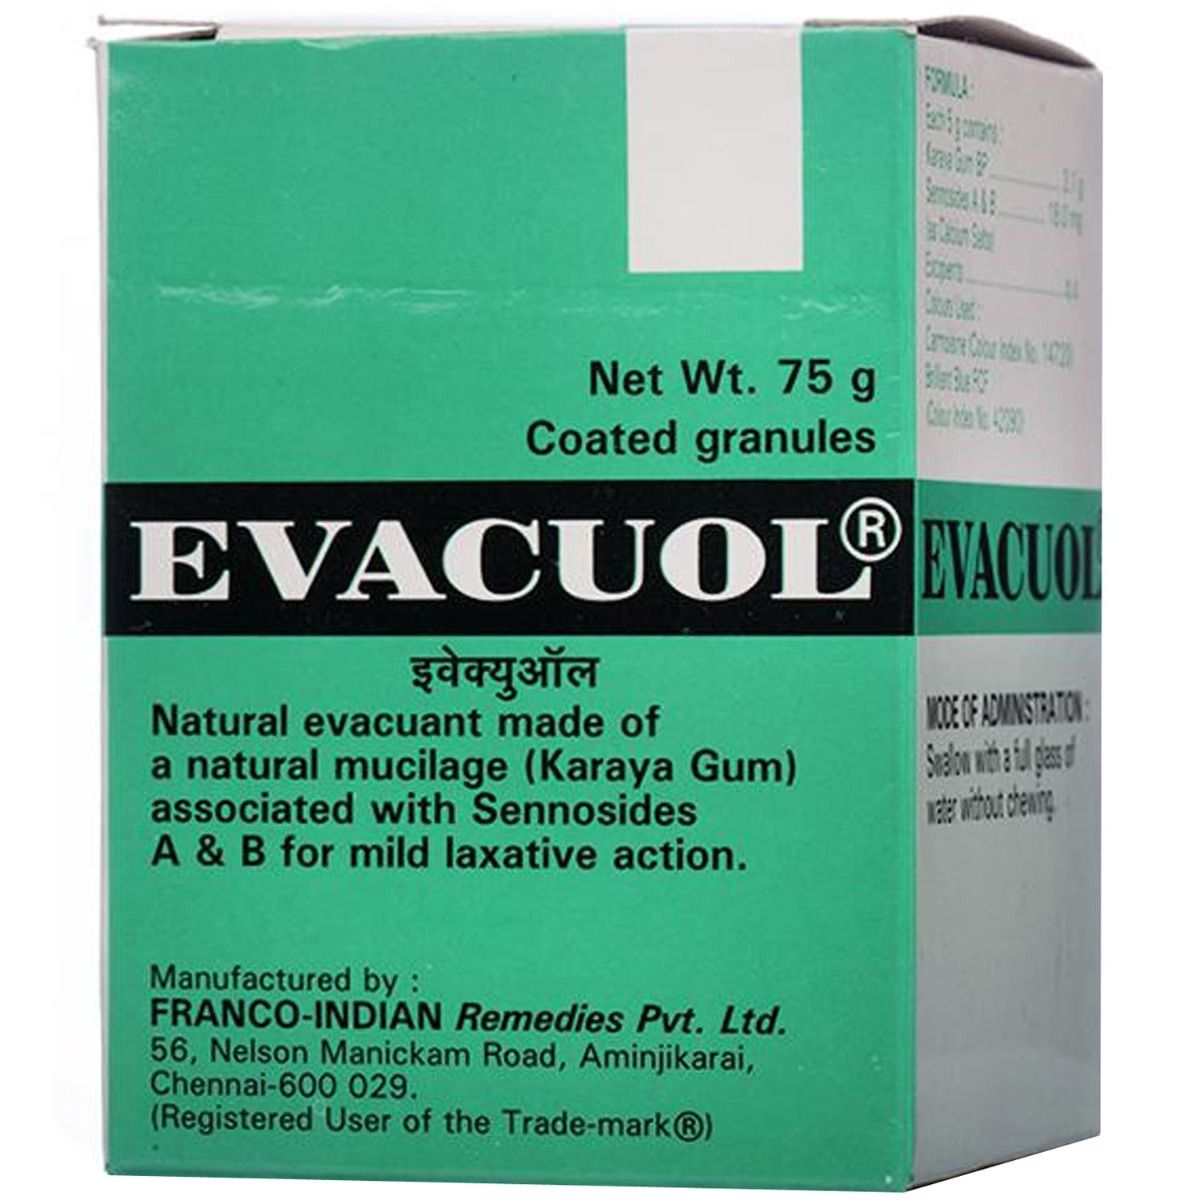 Evacuol Granules, 75 gm, Pack of 1 